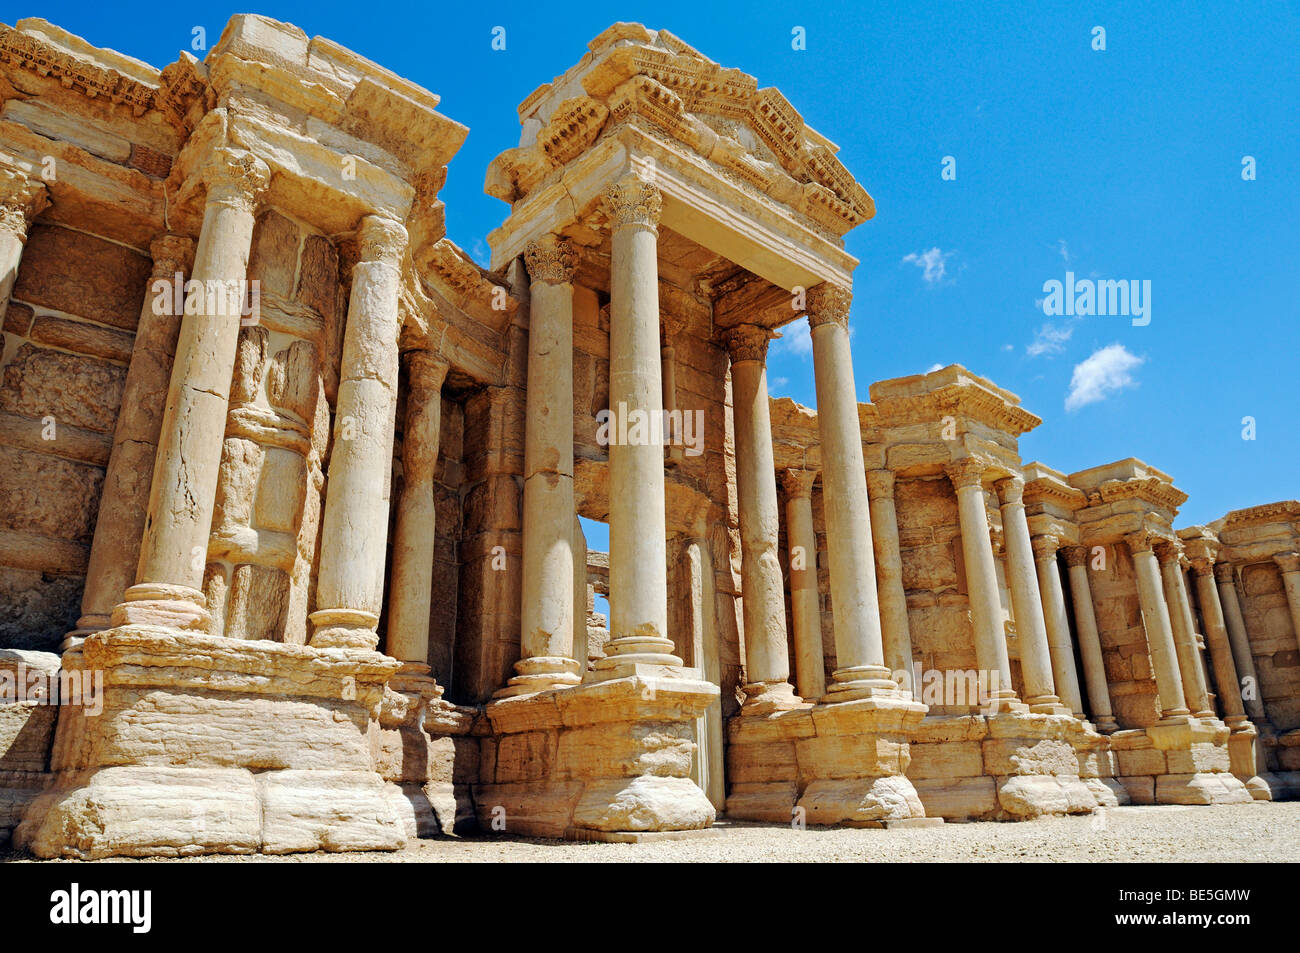 Teatro in rovine di Palmyra sito archeologico, Tadmur, Siria, Asia Foto Stock